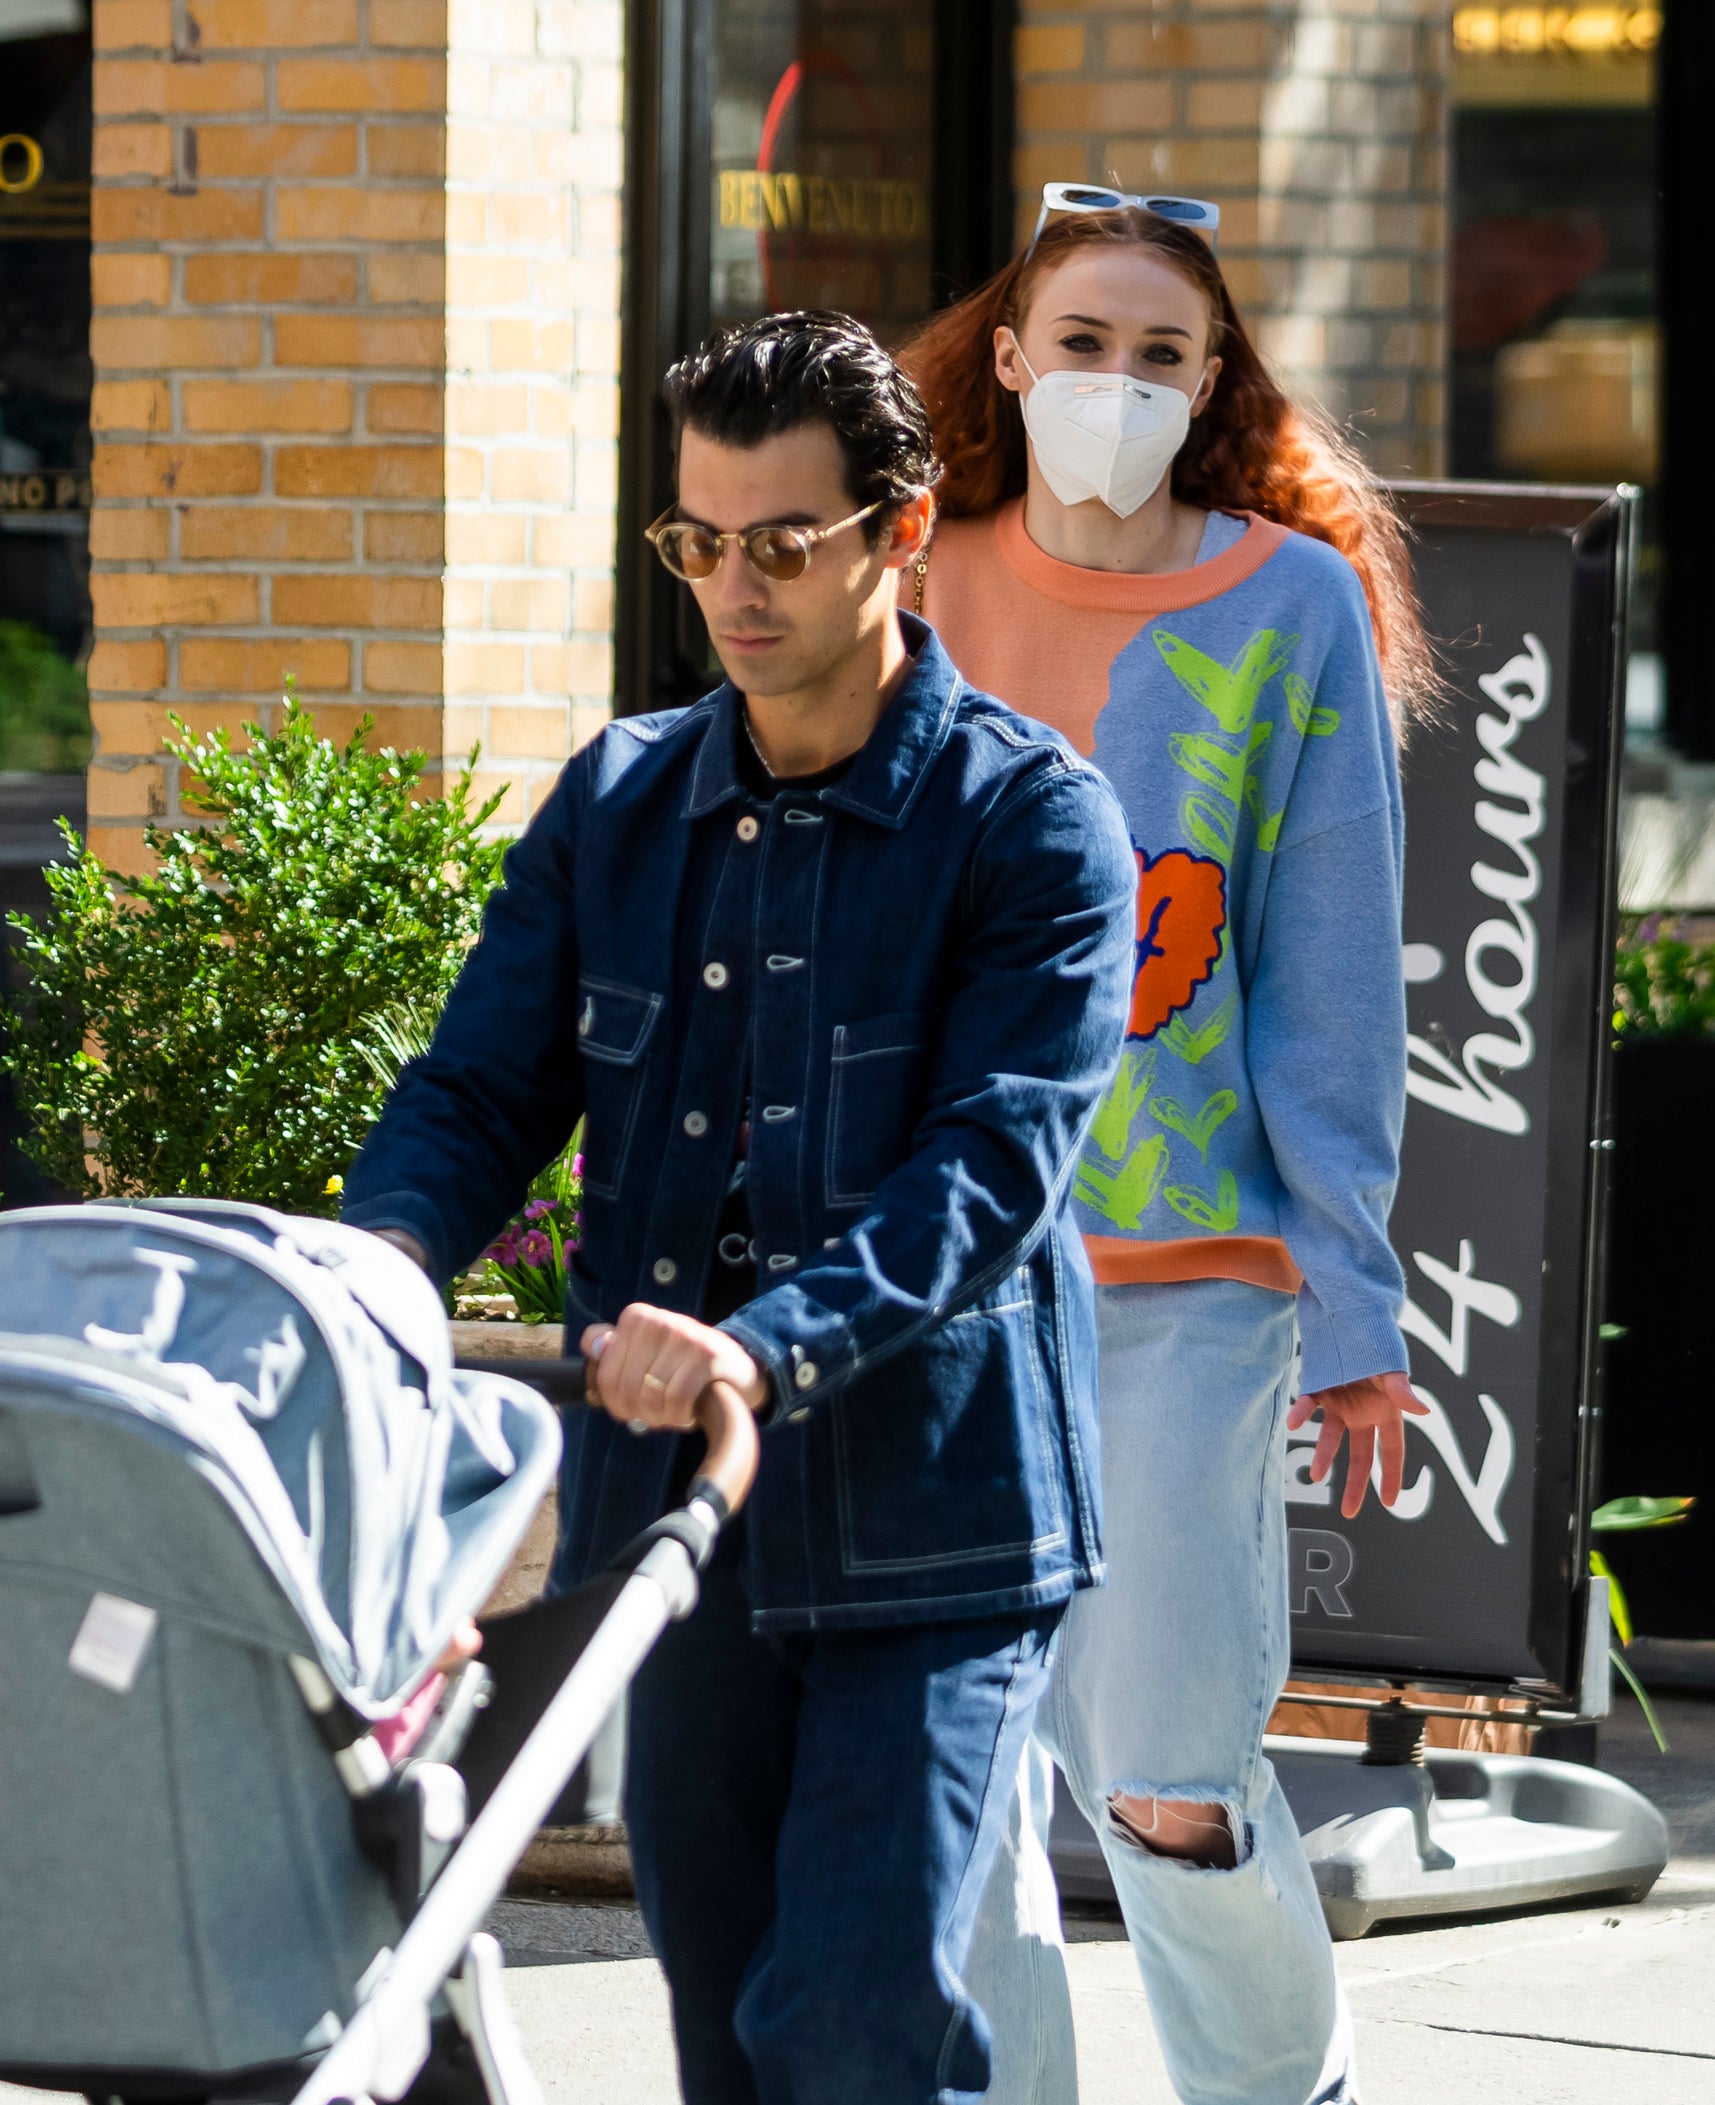 Joe pushing a stroller as Sophie walks behind him